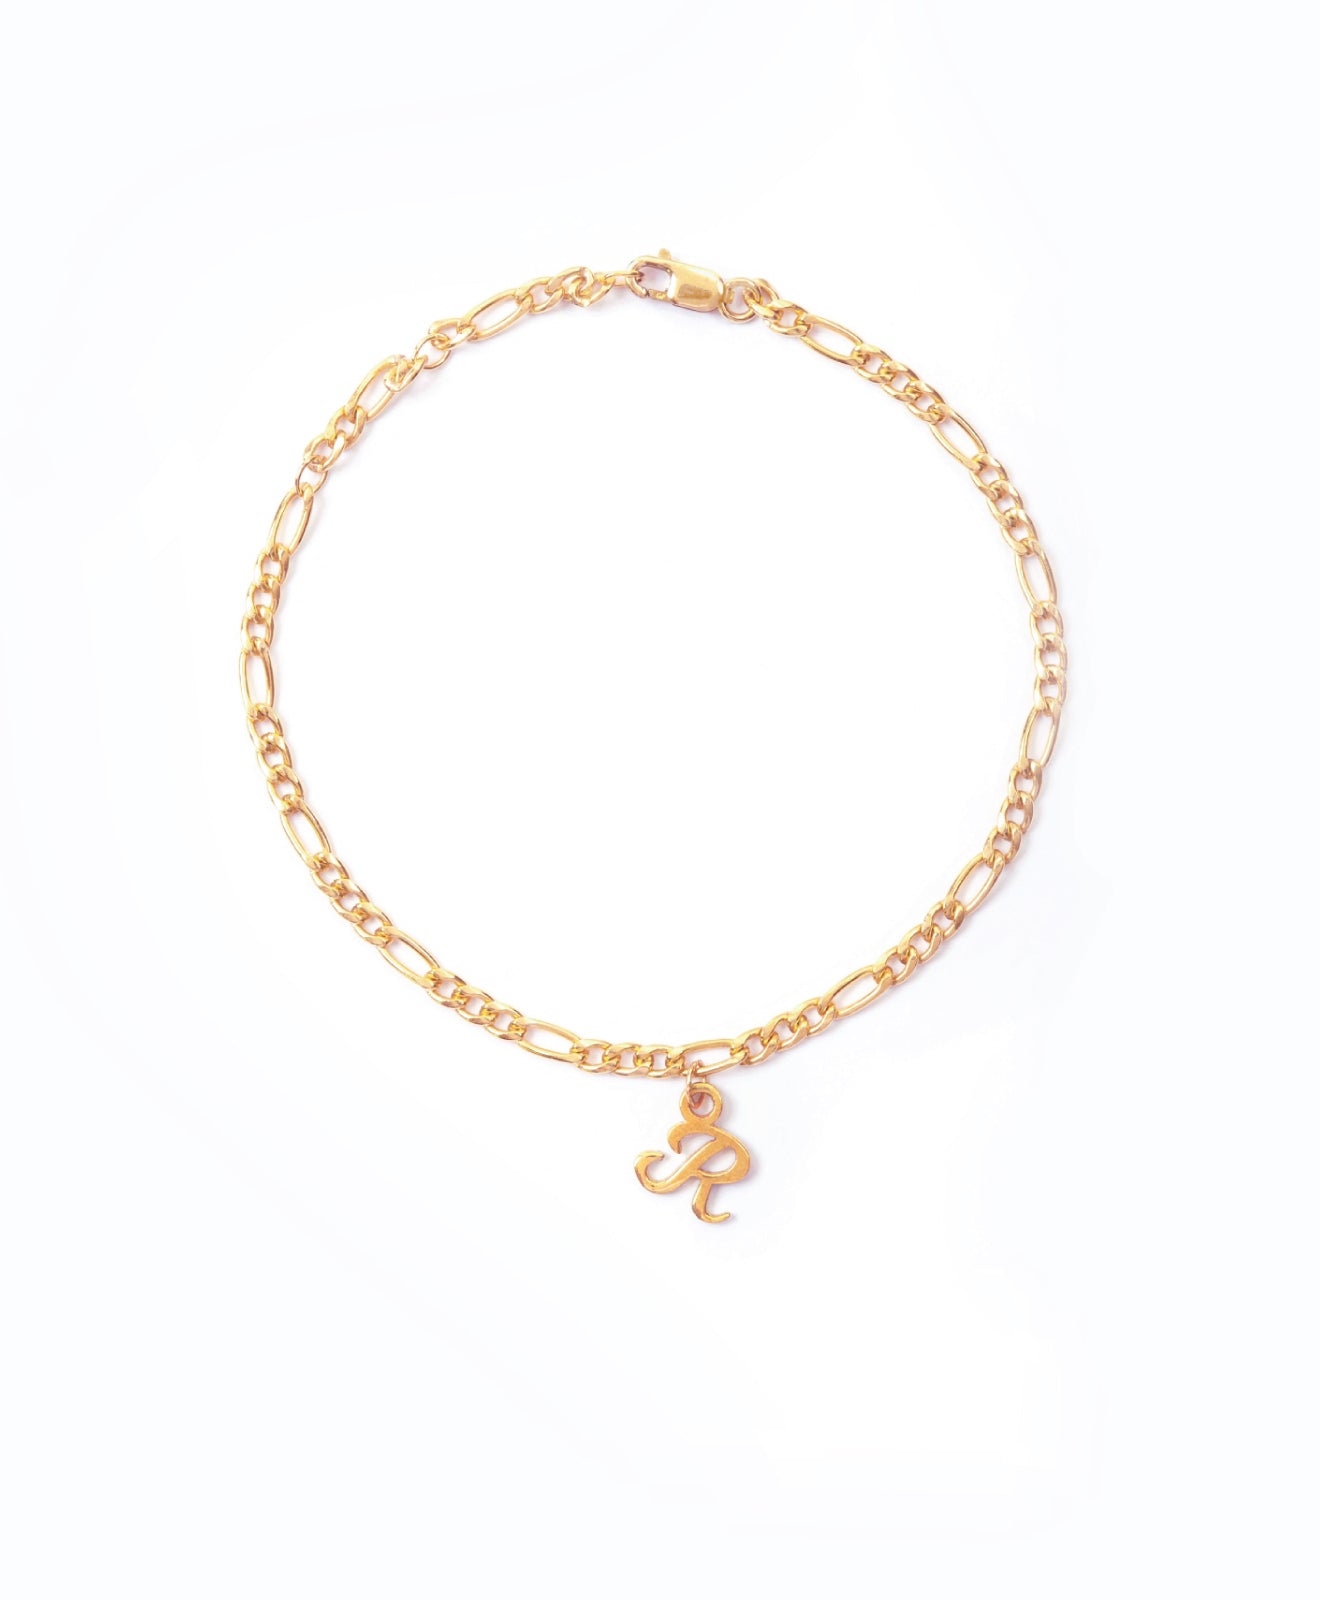 Bracelet with letter E  Letter bracelet, Handmade pendants, Jewelry